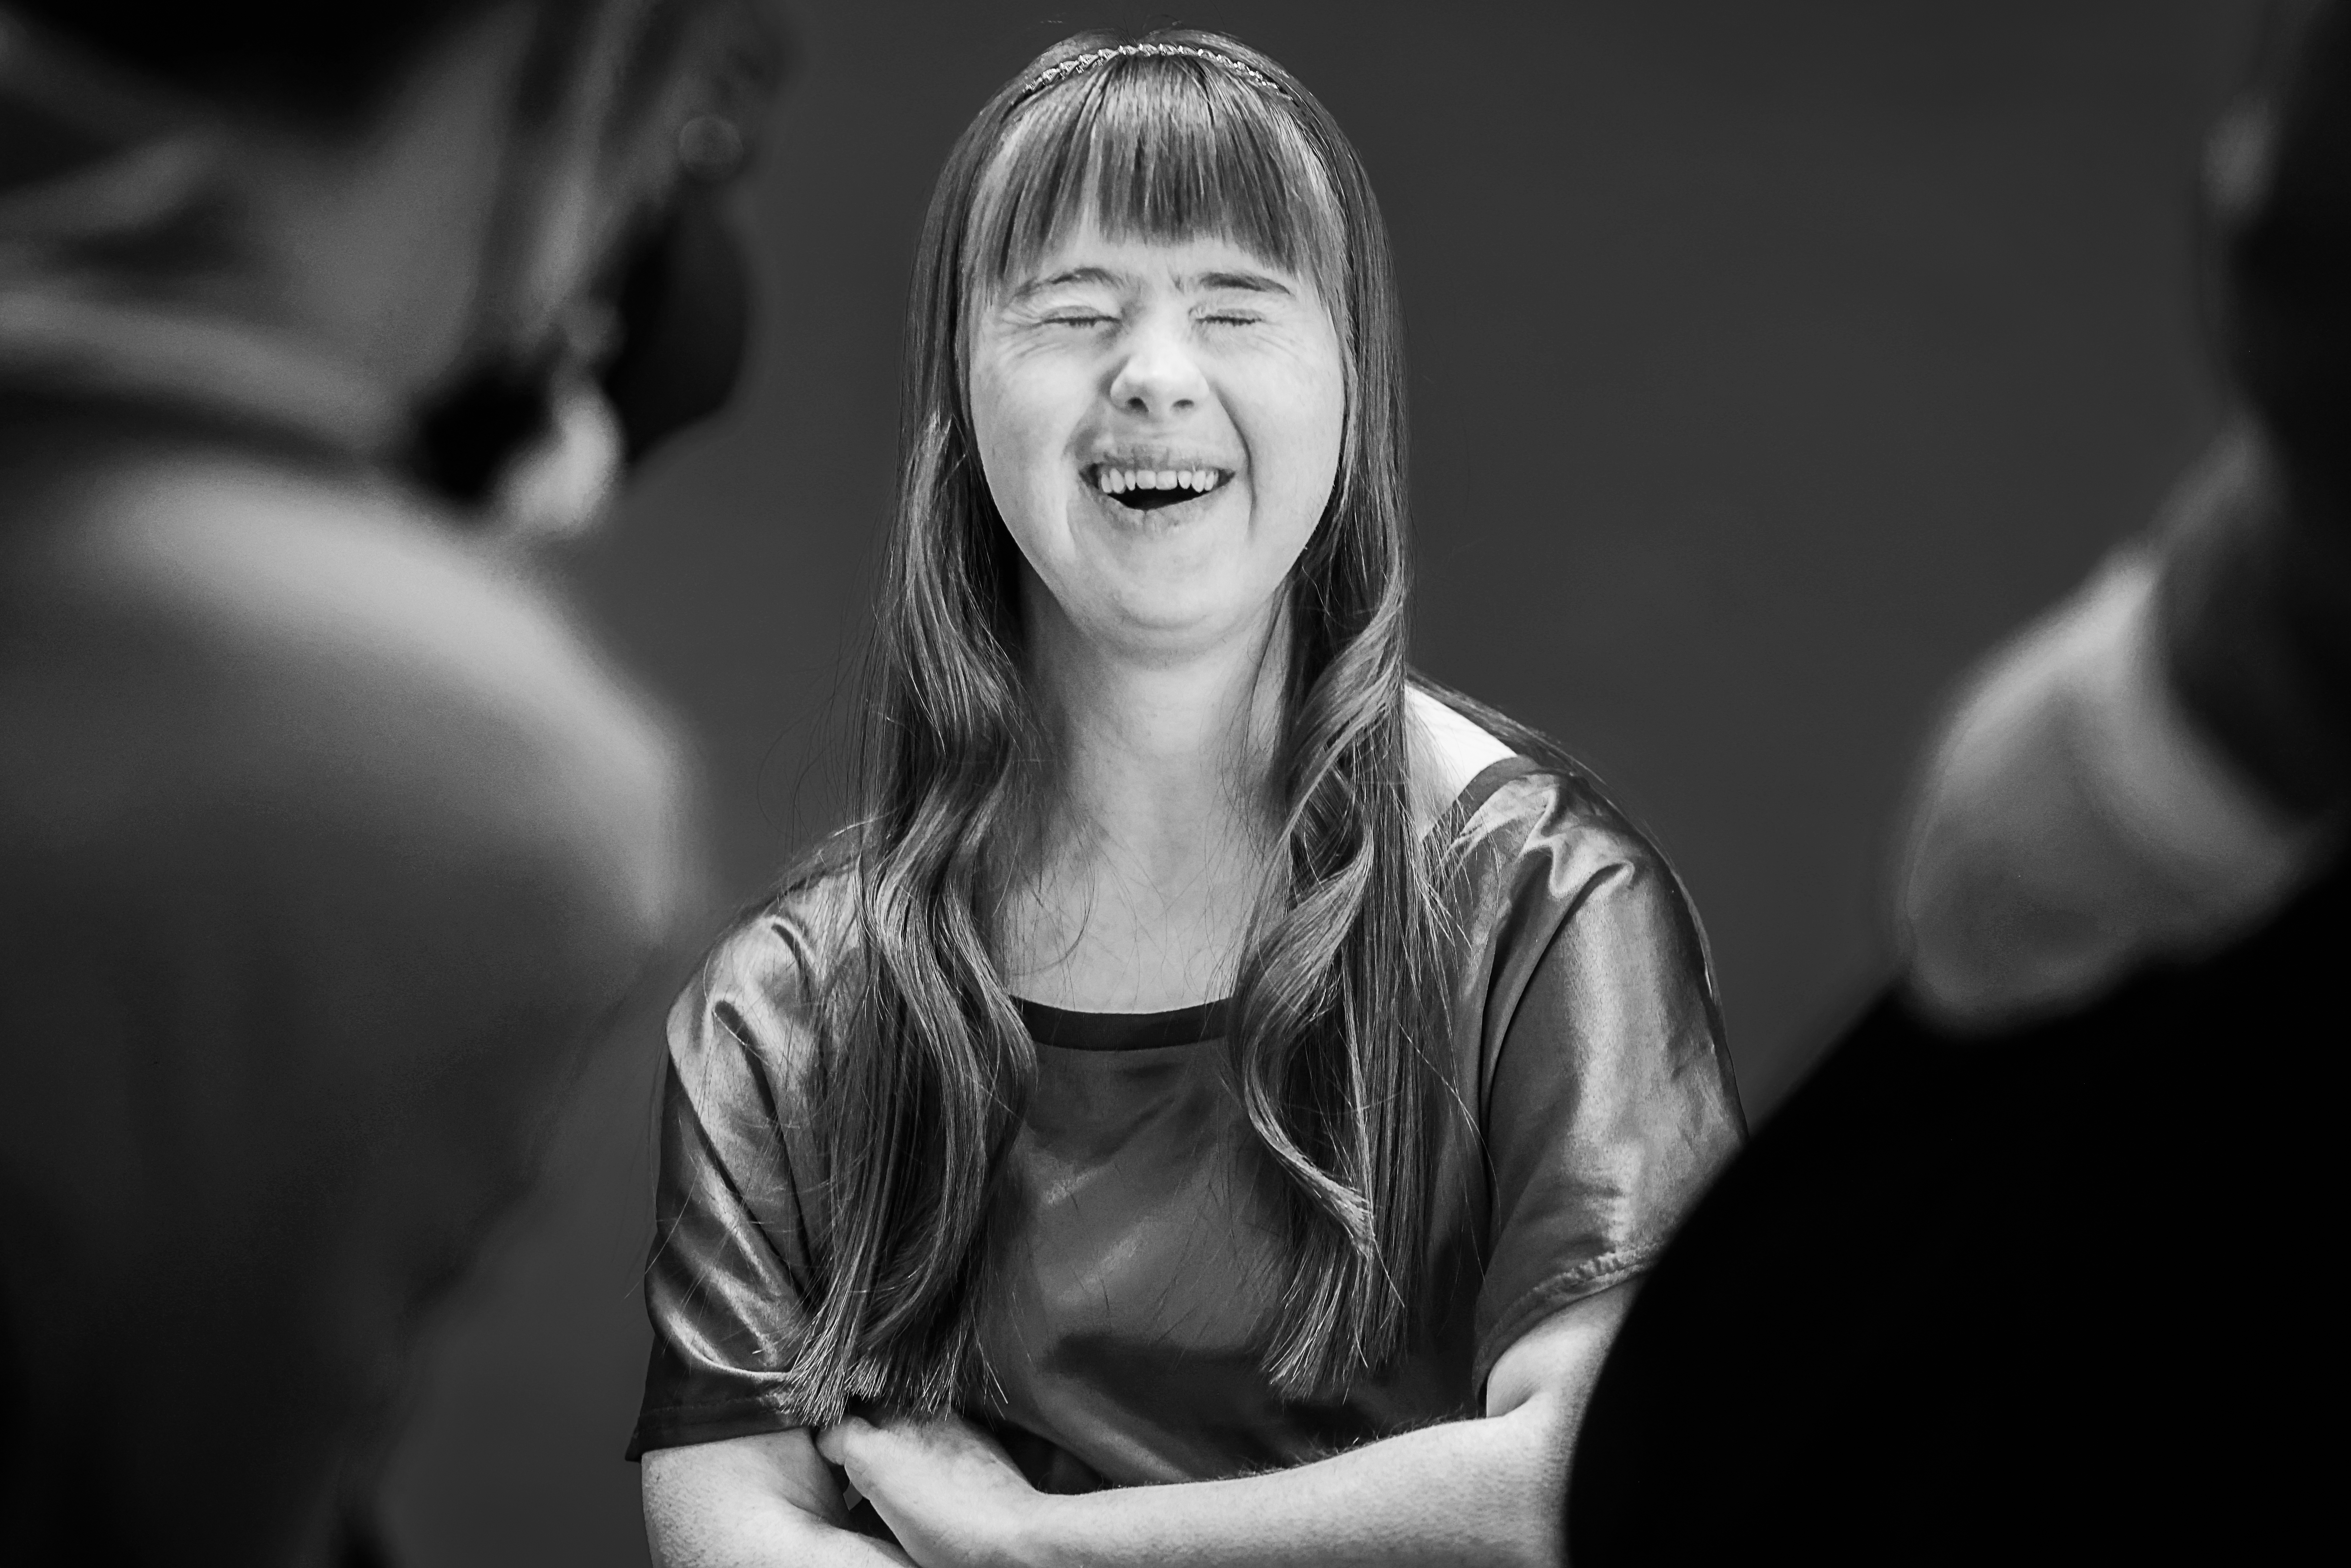 Schwarz-weiß Porträt einer jungen Frau mit Trisomie 21 im Rahmen des interaktiven Kunstprojekts Würde.